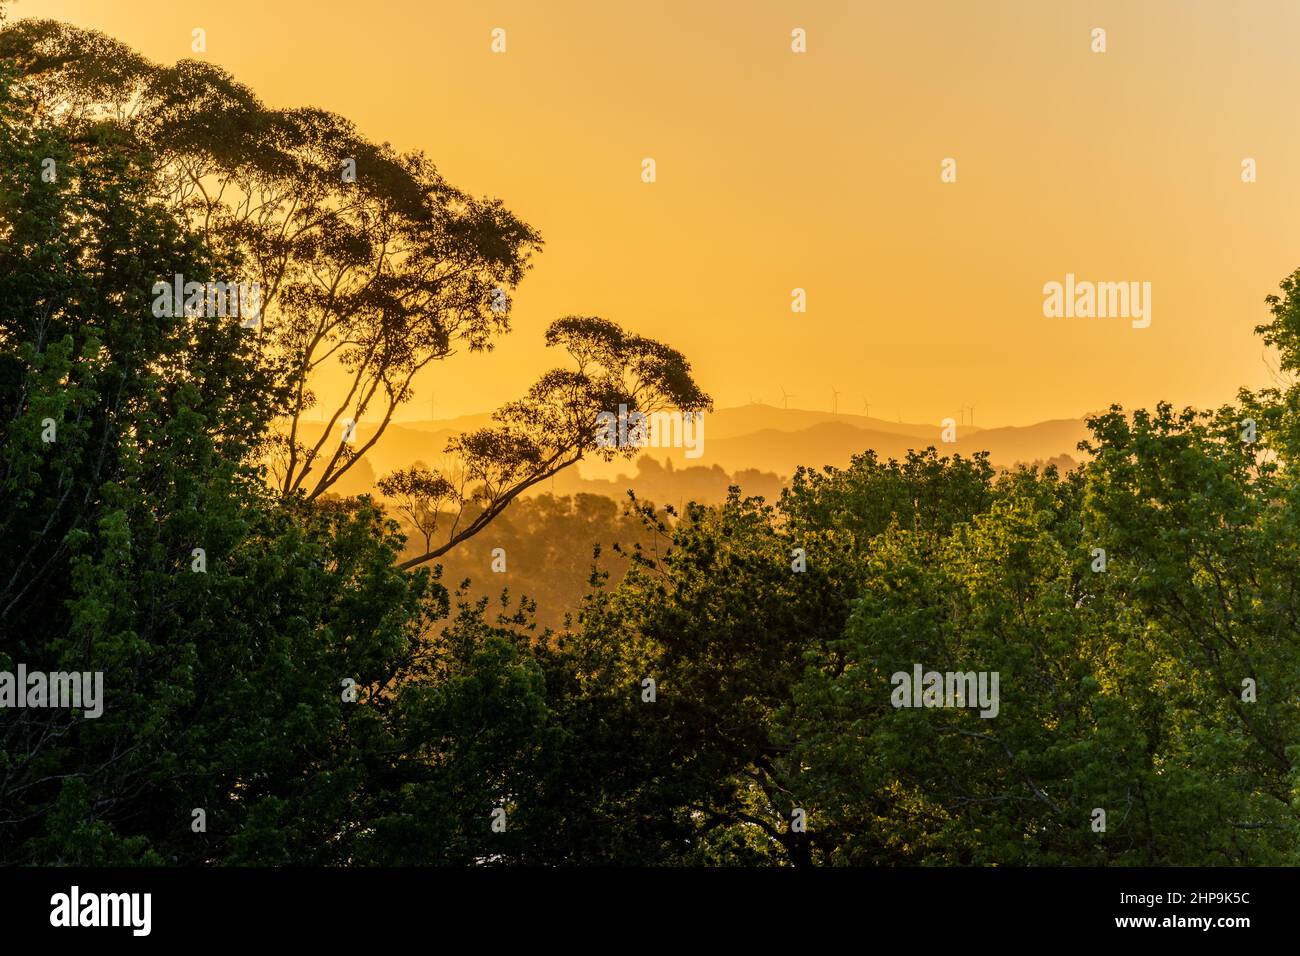 Windmills at dusk in the Waikato region, New Zealand Stock Photo